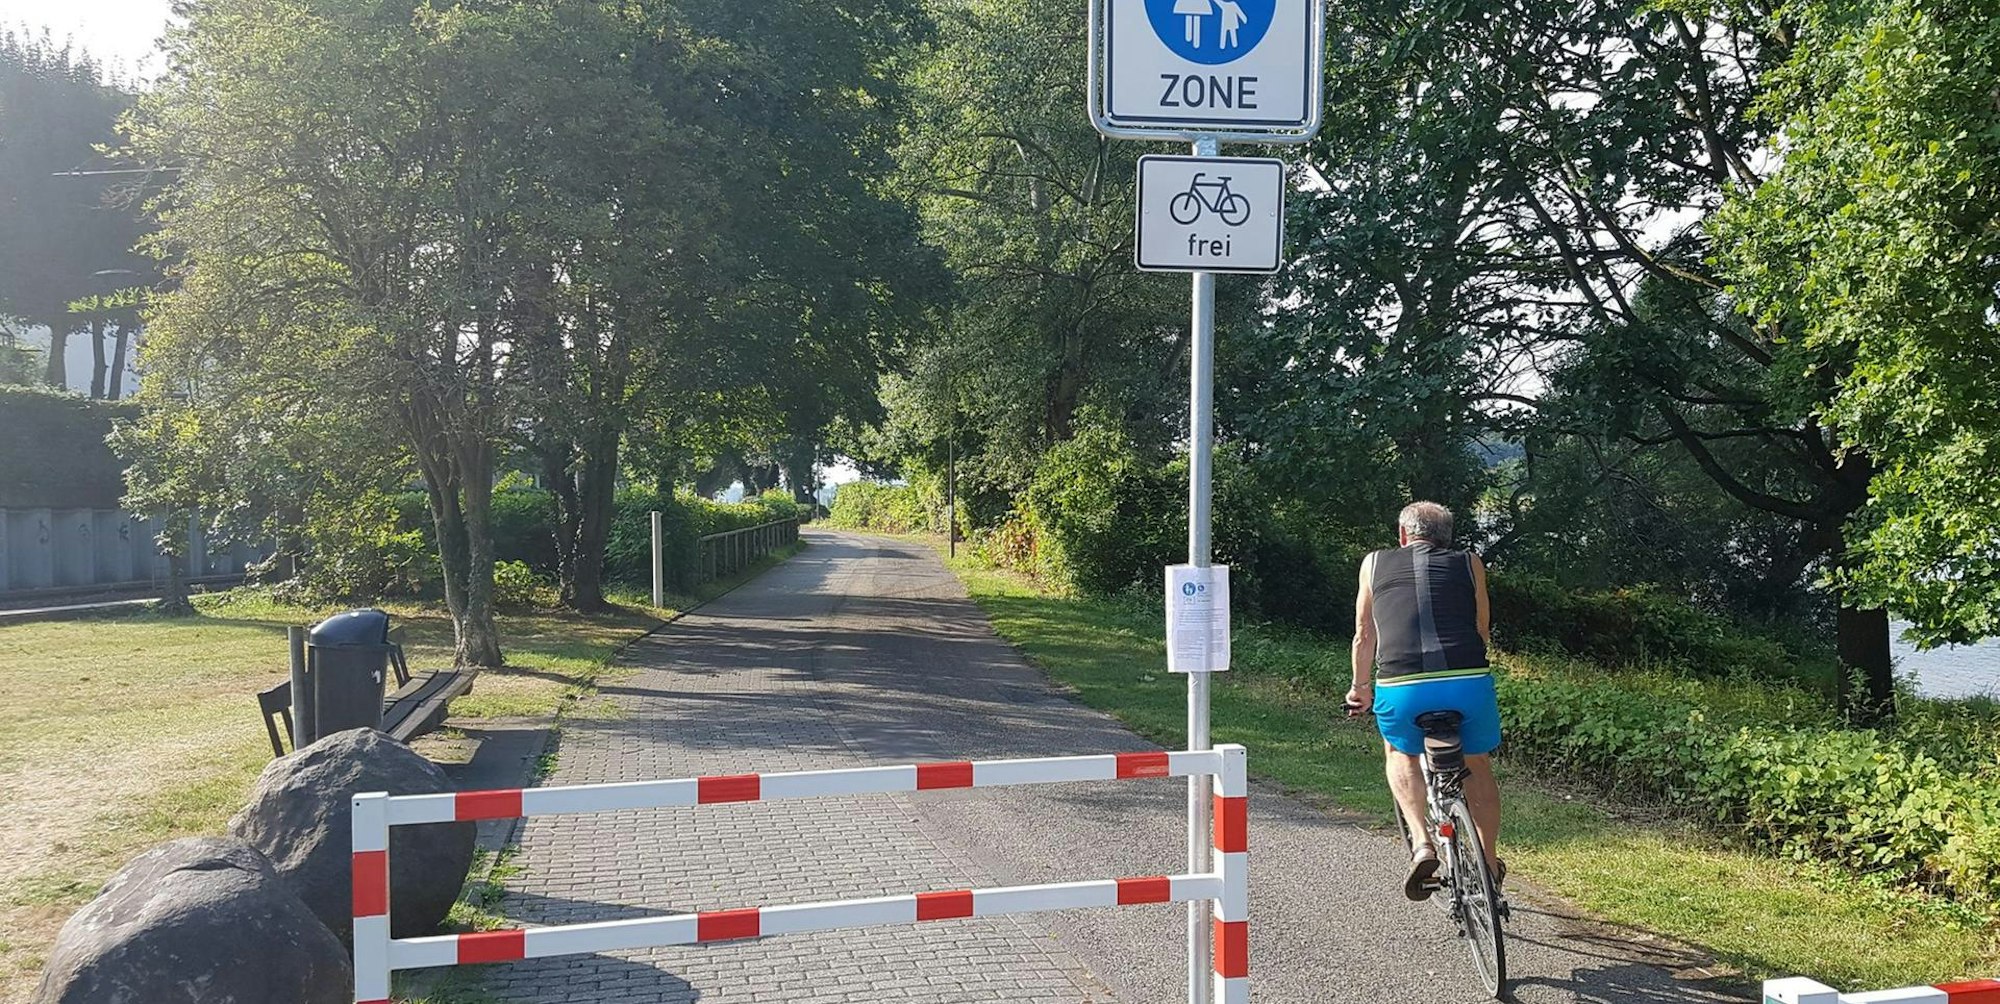 Mit einem Wust an Schildern und zusätzlichen Erklärungen hat die Stadt die Fußgängerzonenregelung auf der Rheinpromenade umgesetzt, auf der im Jahr rund 350 000 Radfahrer unterwegs sind, die nun eigentlich alle Schritttempo fahren müssen. Die Alternativroute nutzt aber kaum ein Radfahrer. Und die Umlaufsperren sind kein wirkliches Hindernis.